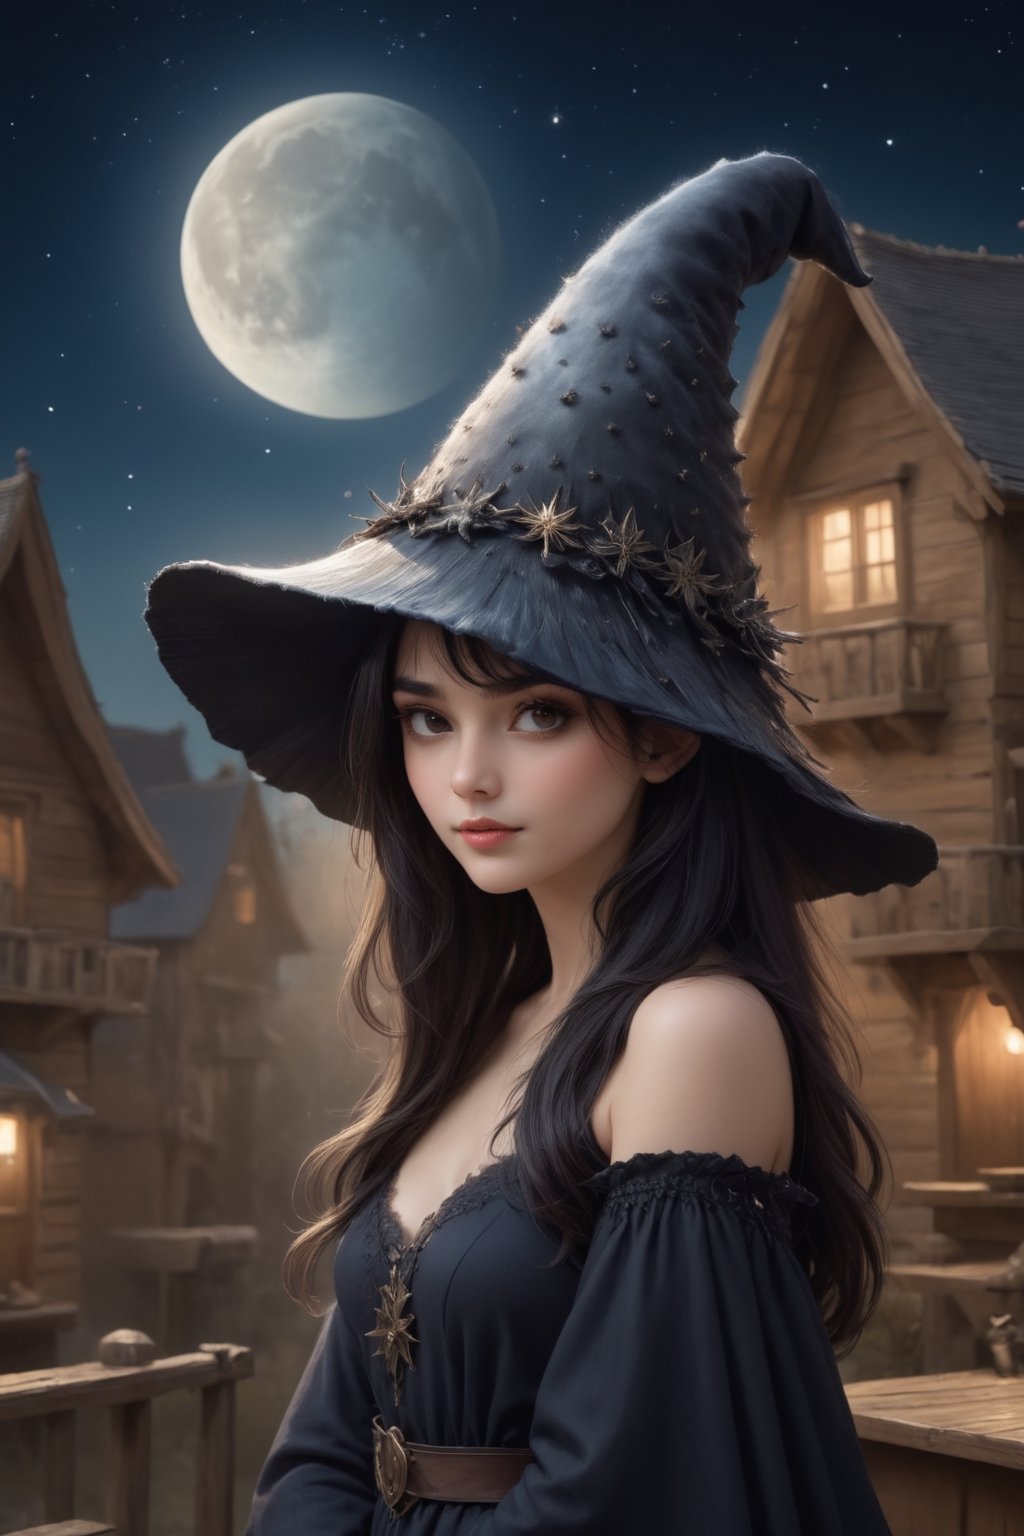 a witch stargazing on a hill, a1sw-InkyCapWitch wearing sm1cdrip-witchhat, dreamy night scene,a1sw-InkyCapWitch